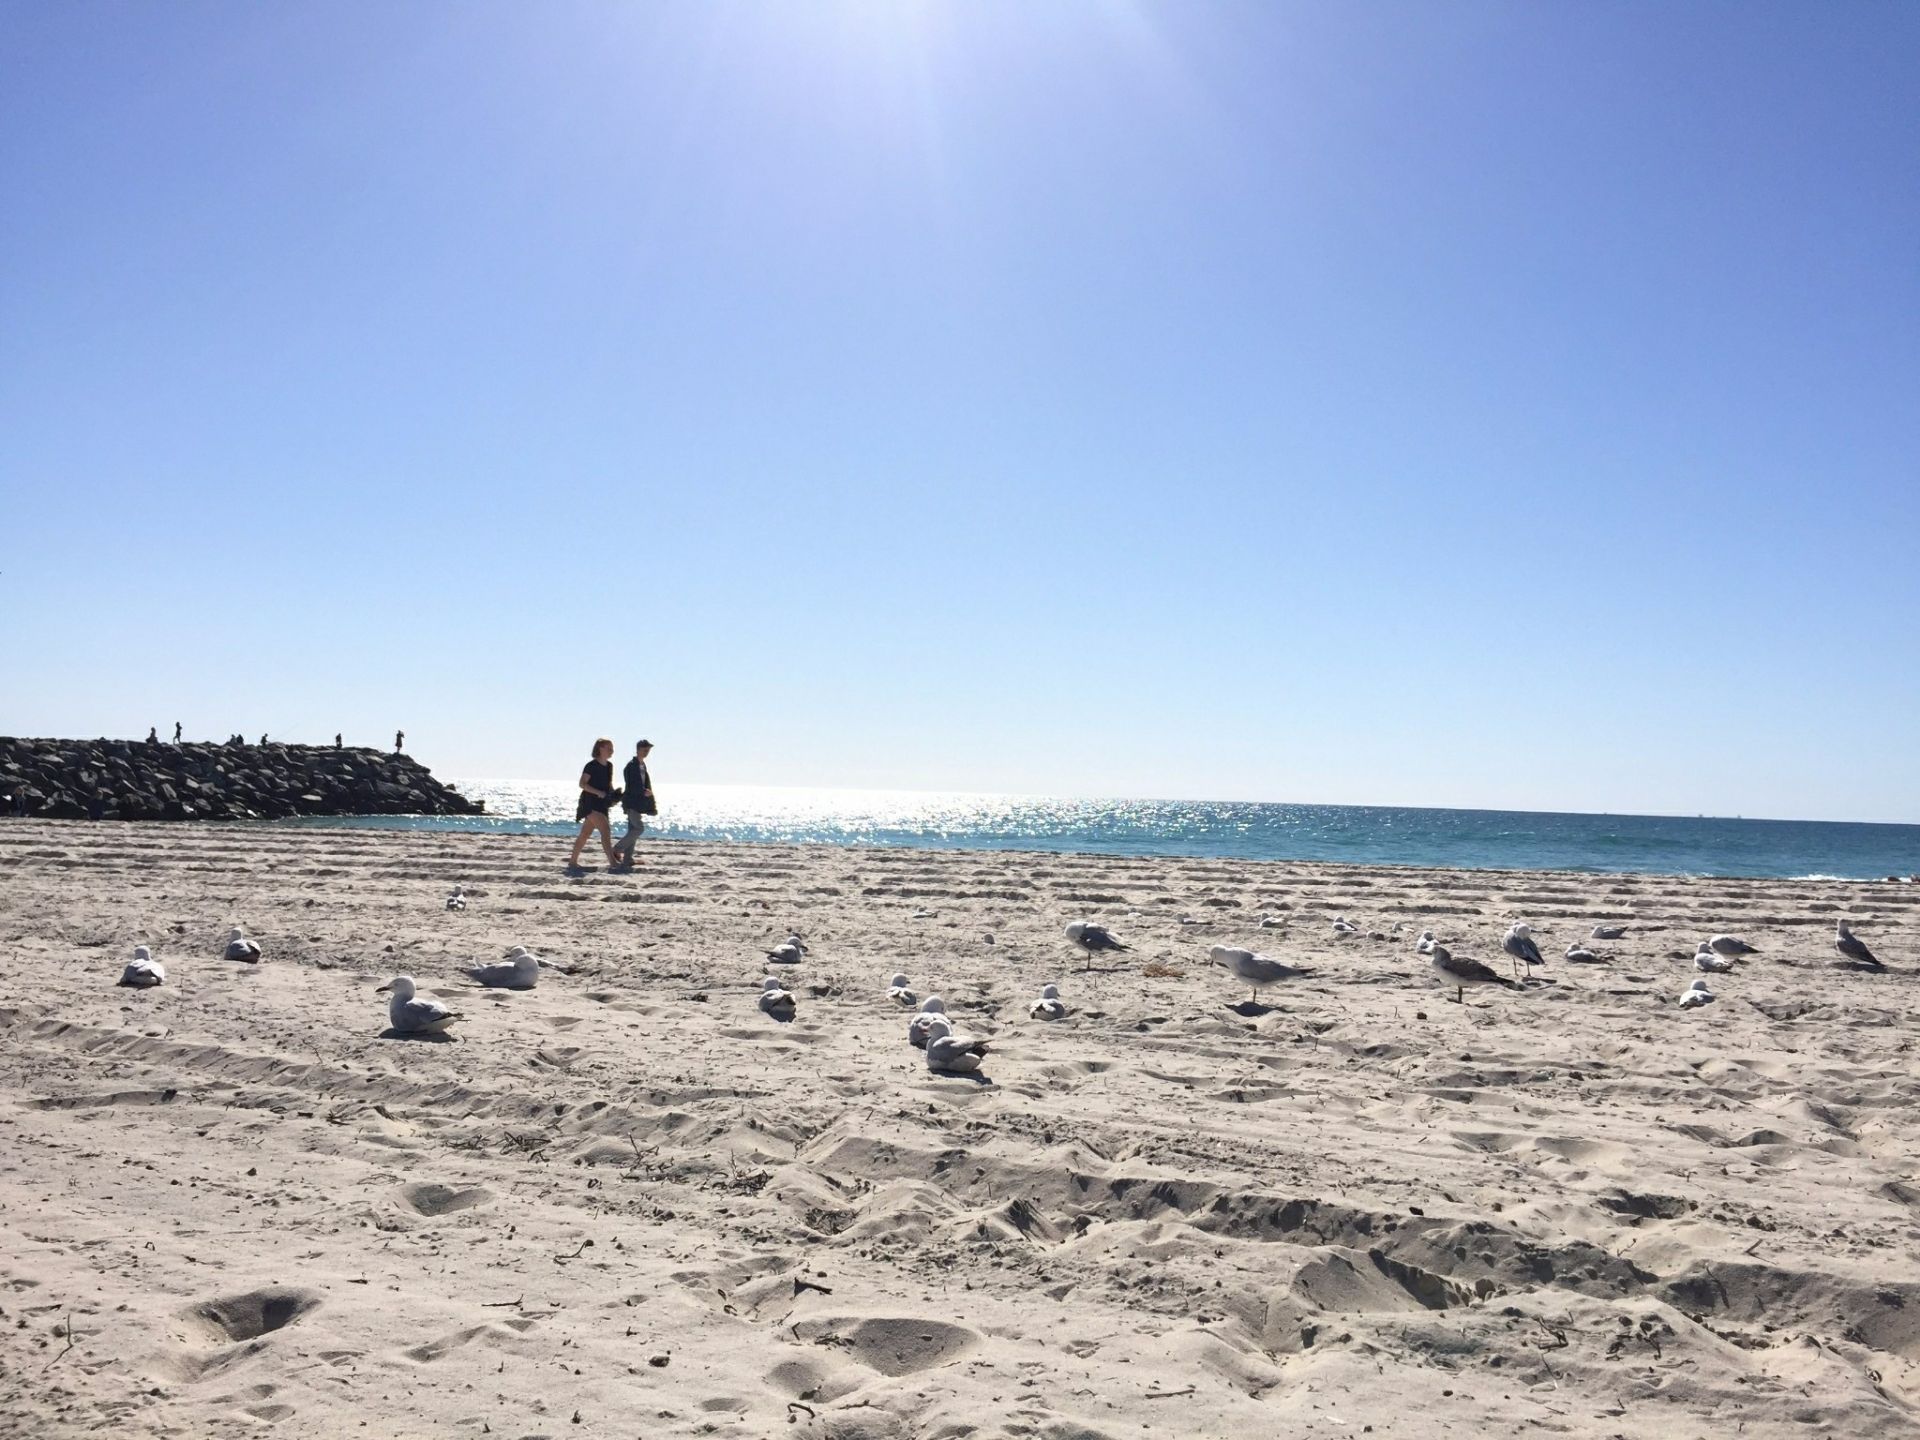 珀斯的科特斯洛海滩，它的面积在珀斯是非常大的，这里的砂质较为的洁白柔软。整个海滩的游客并不是很多，有